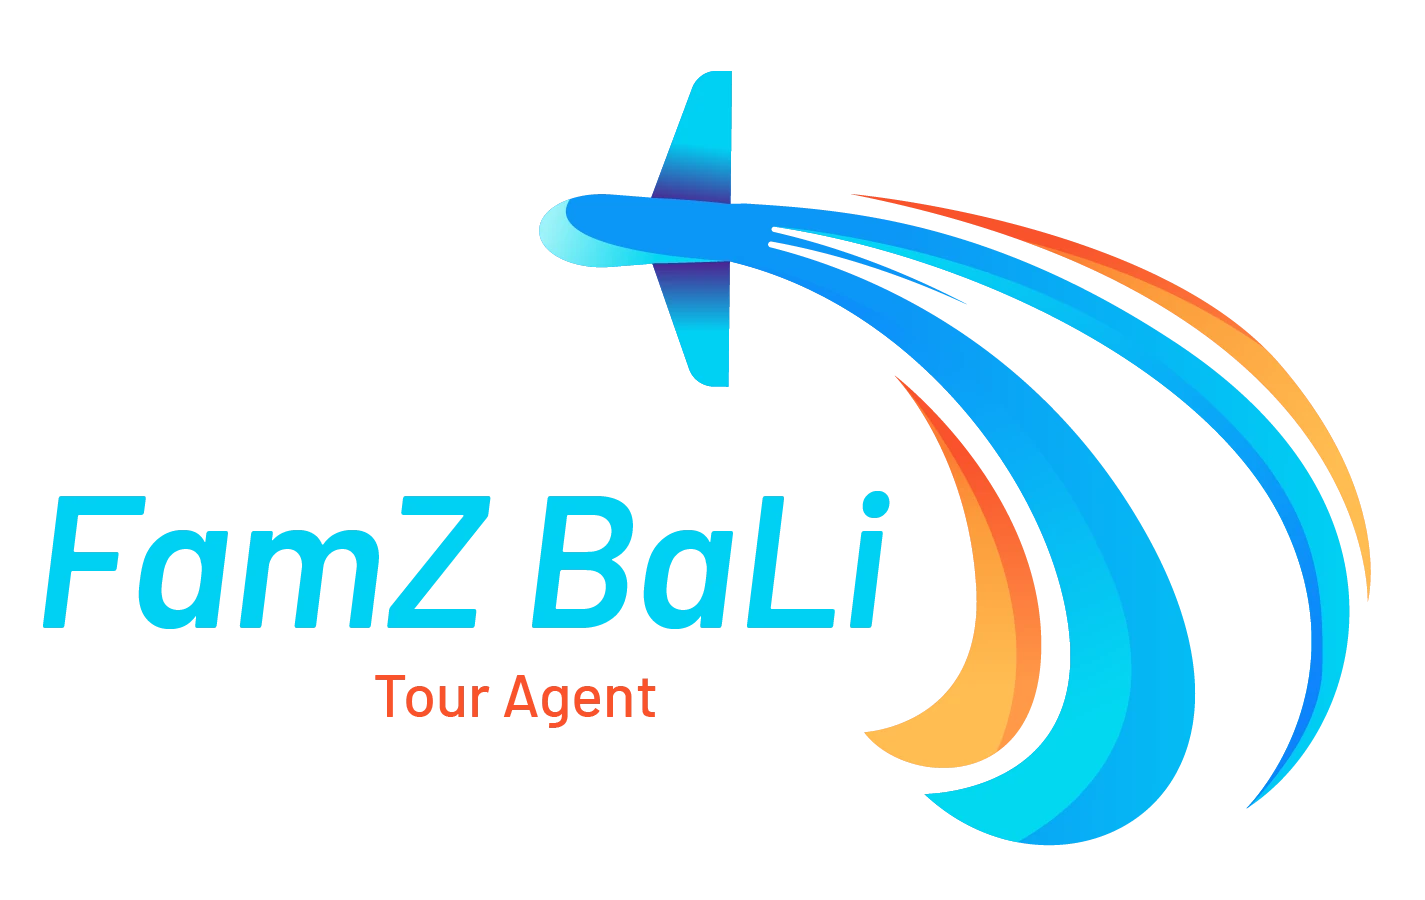 Famzbalitour.com